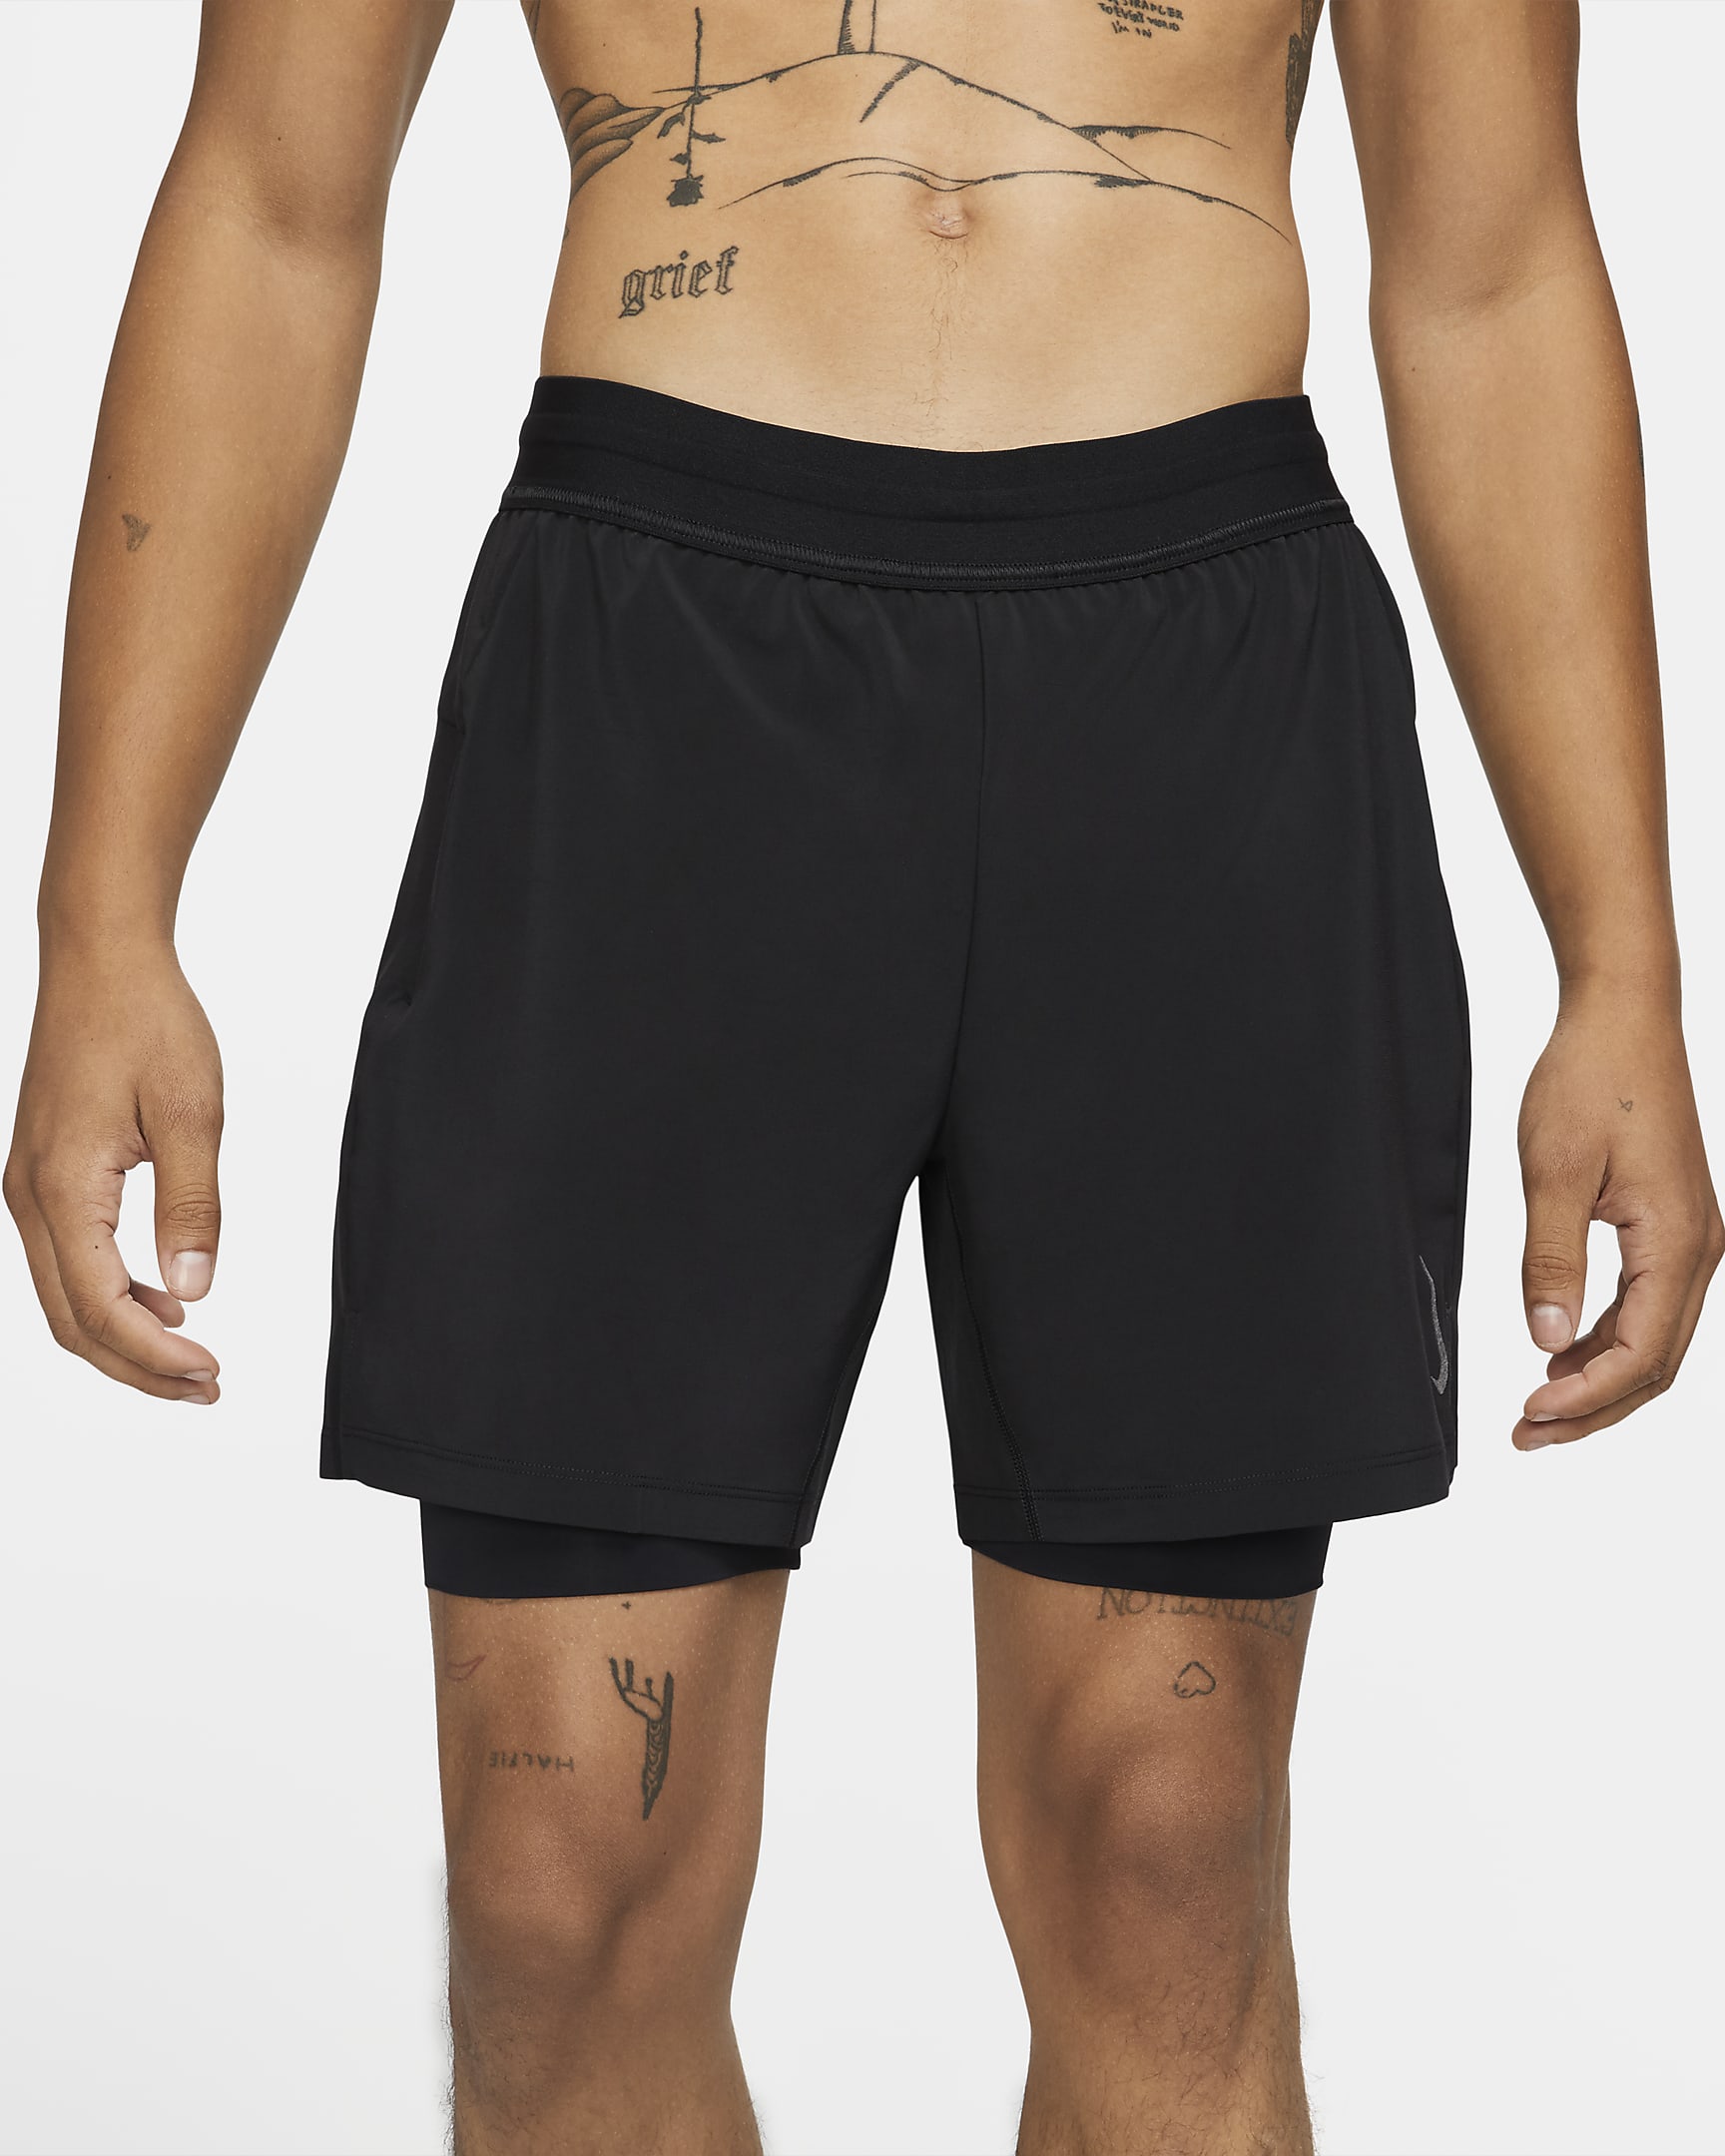 Nike Yoga Pantalons curts 2 en 1 - Home - Negre